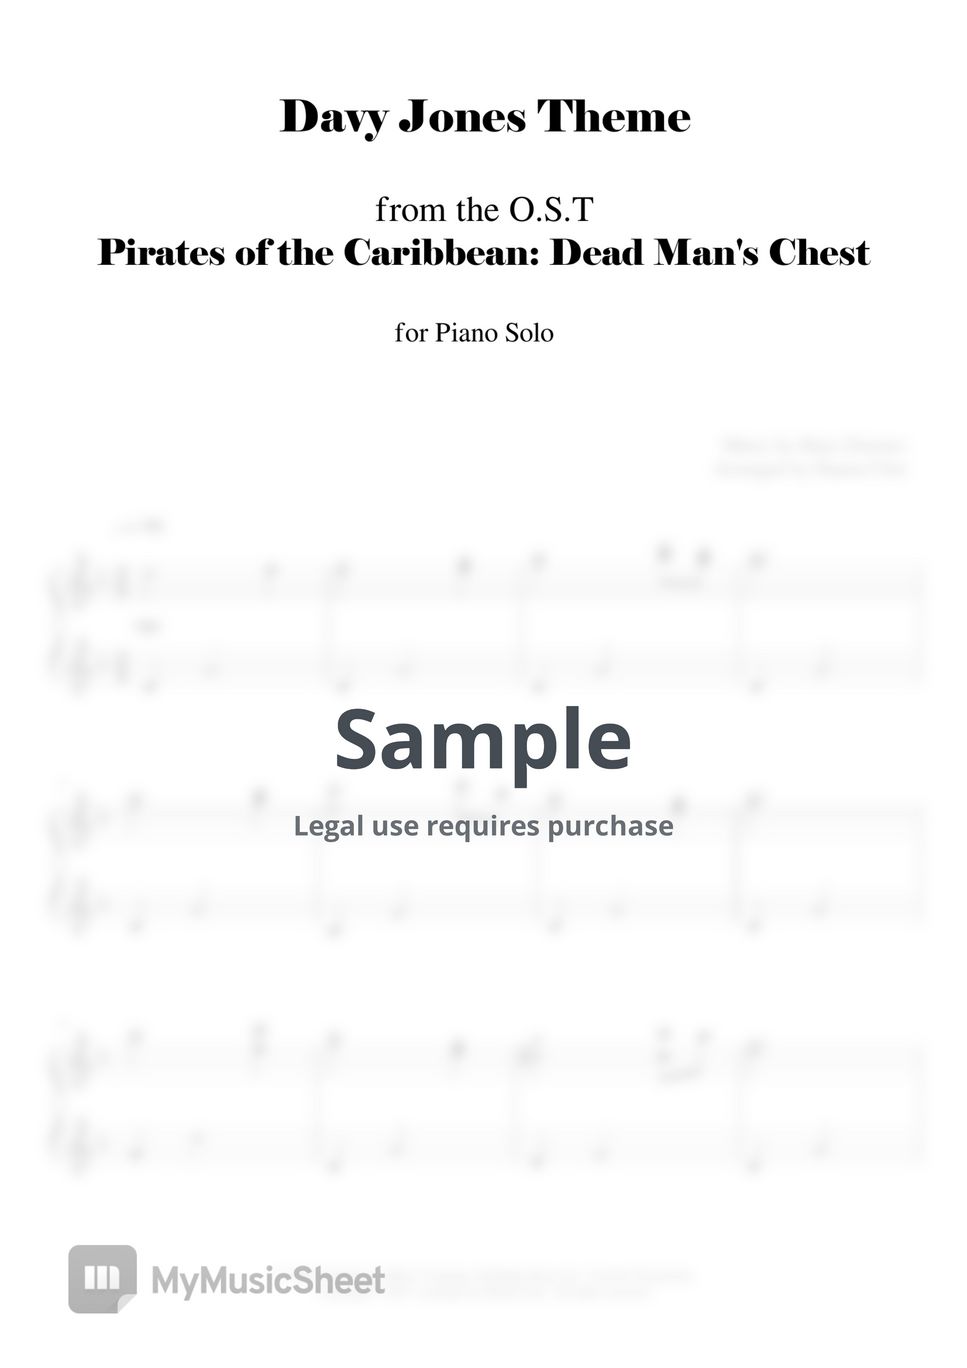 캐리비안의 해적 2 - 한스 짐머 - Davy Jones Theme from "Pirates of the Caribbean 2" by YANGCHO